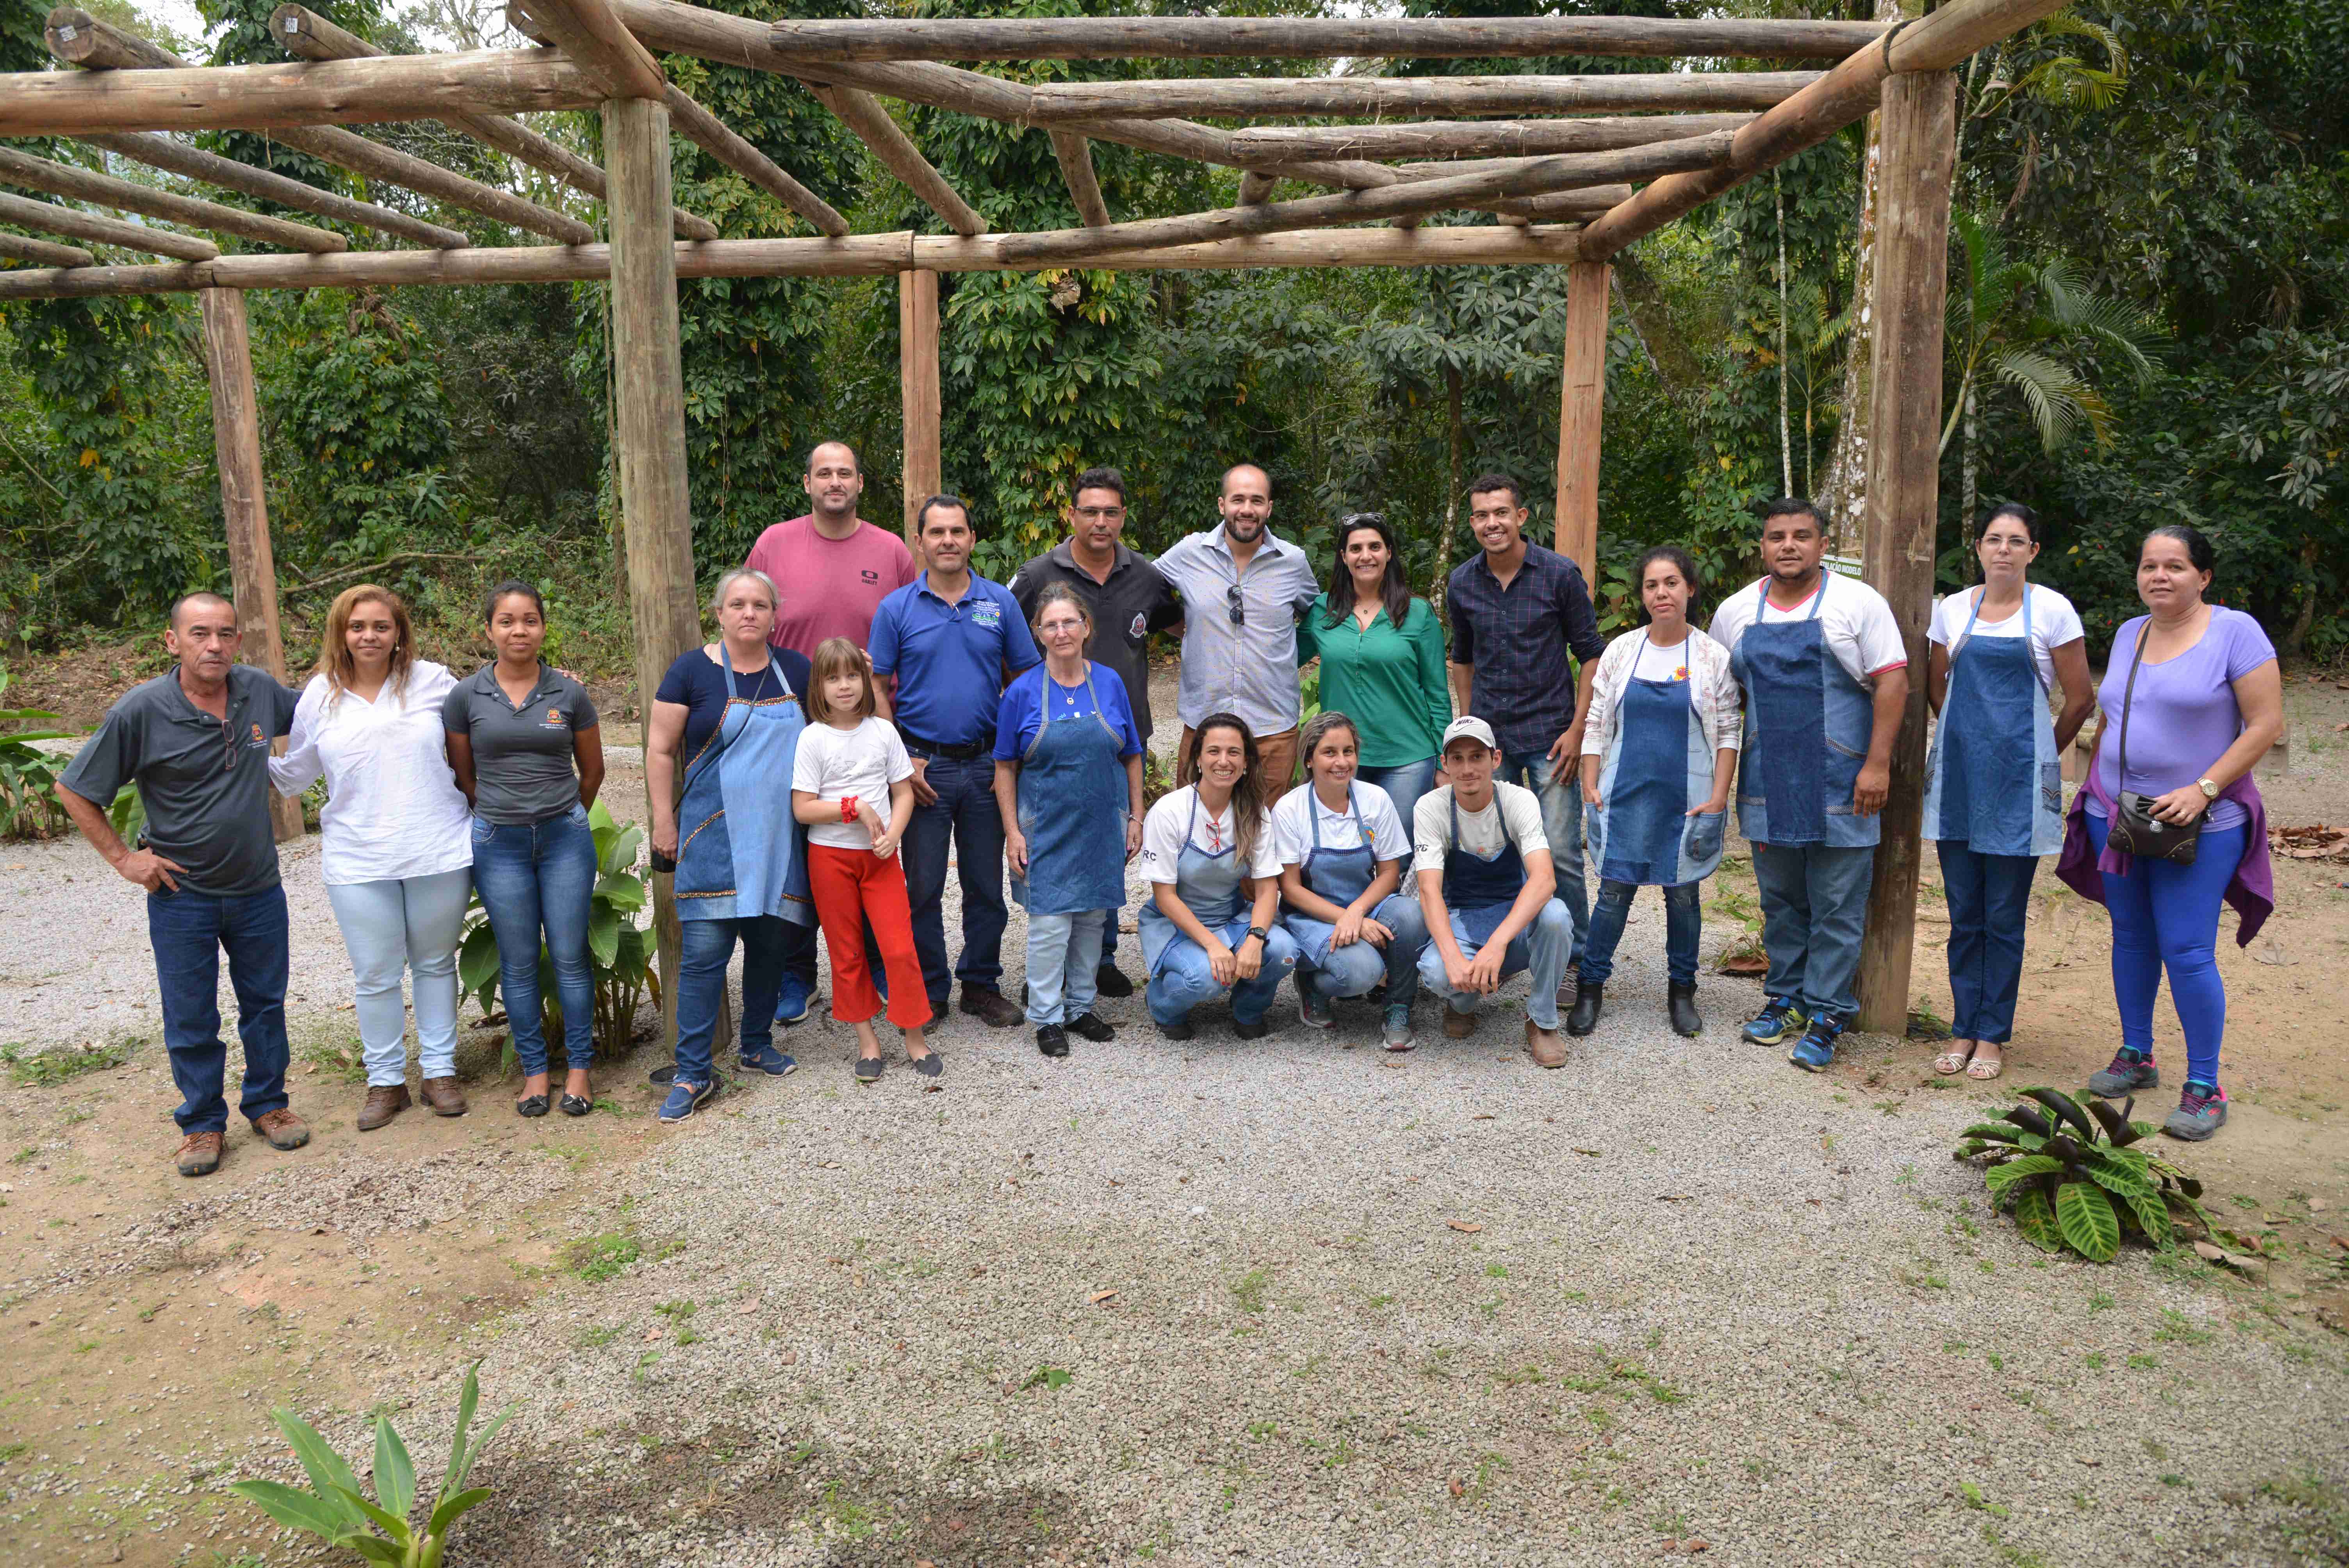 Entidades sociais concluem curso de horta caseira promovido pela Prefeitura de Caraguatatuba (Fotos: Cláudio Gomes/PMC)